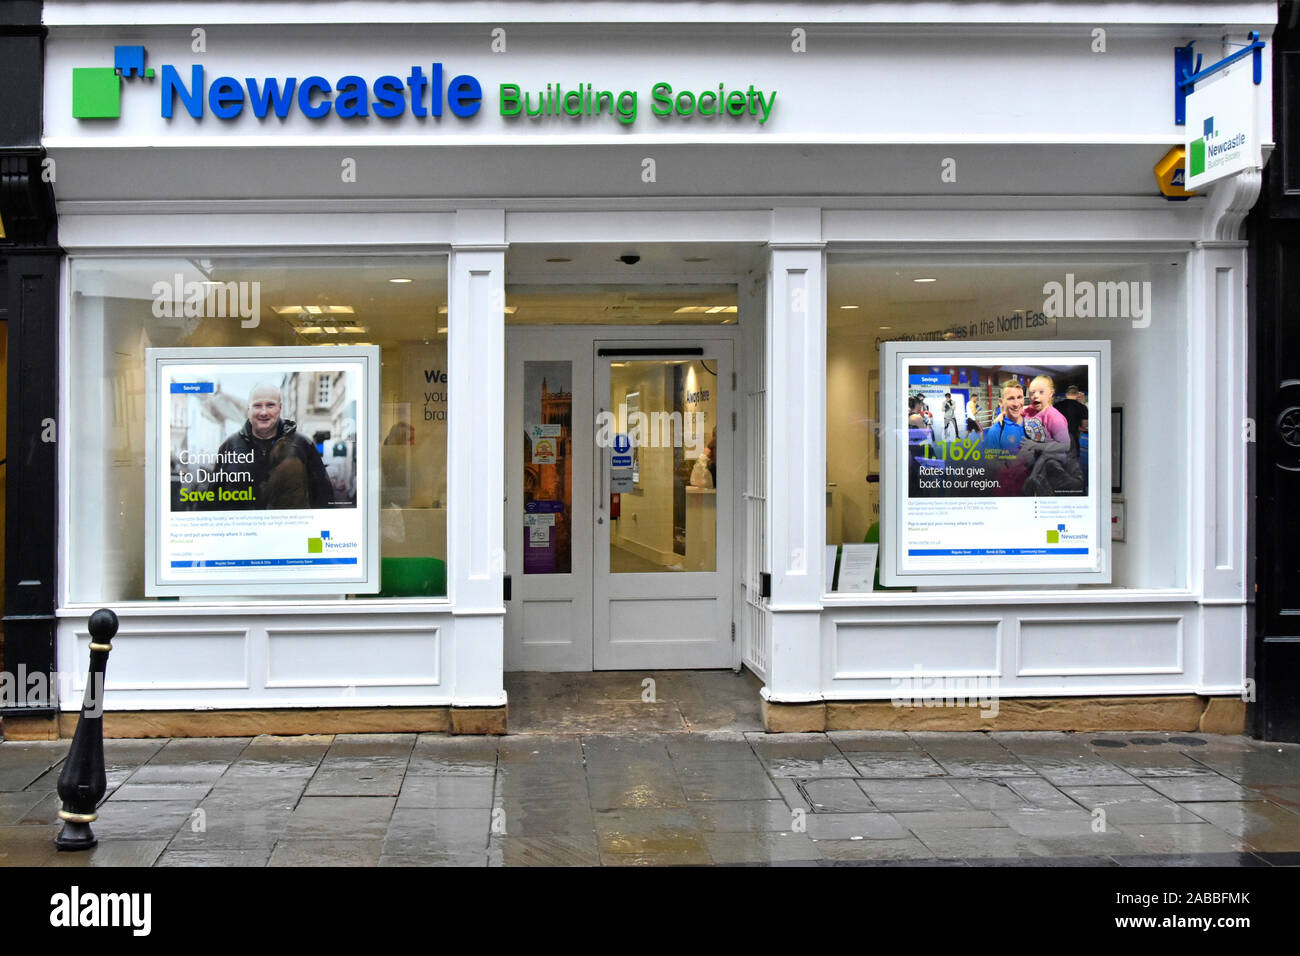 Newcastle Building Society shop front Werbung Windows Filialen des Banking & Financial Services Business in Durham County Durham, England Großbritannien Stockfoto